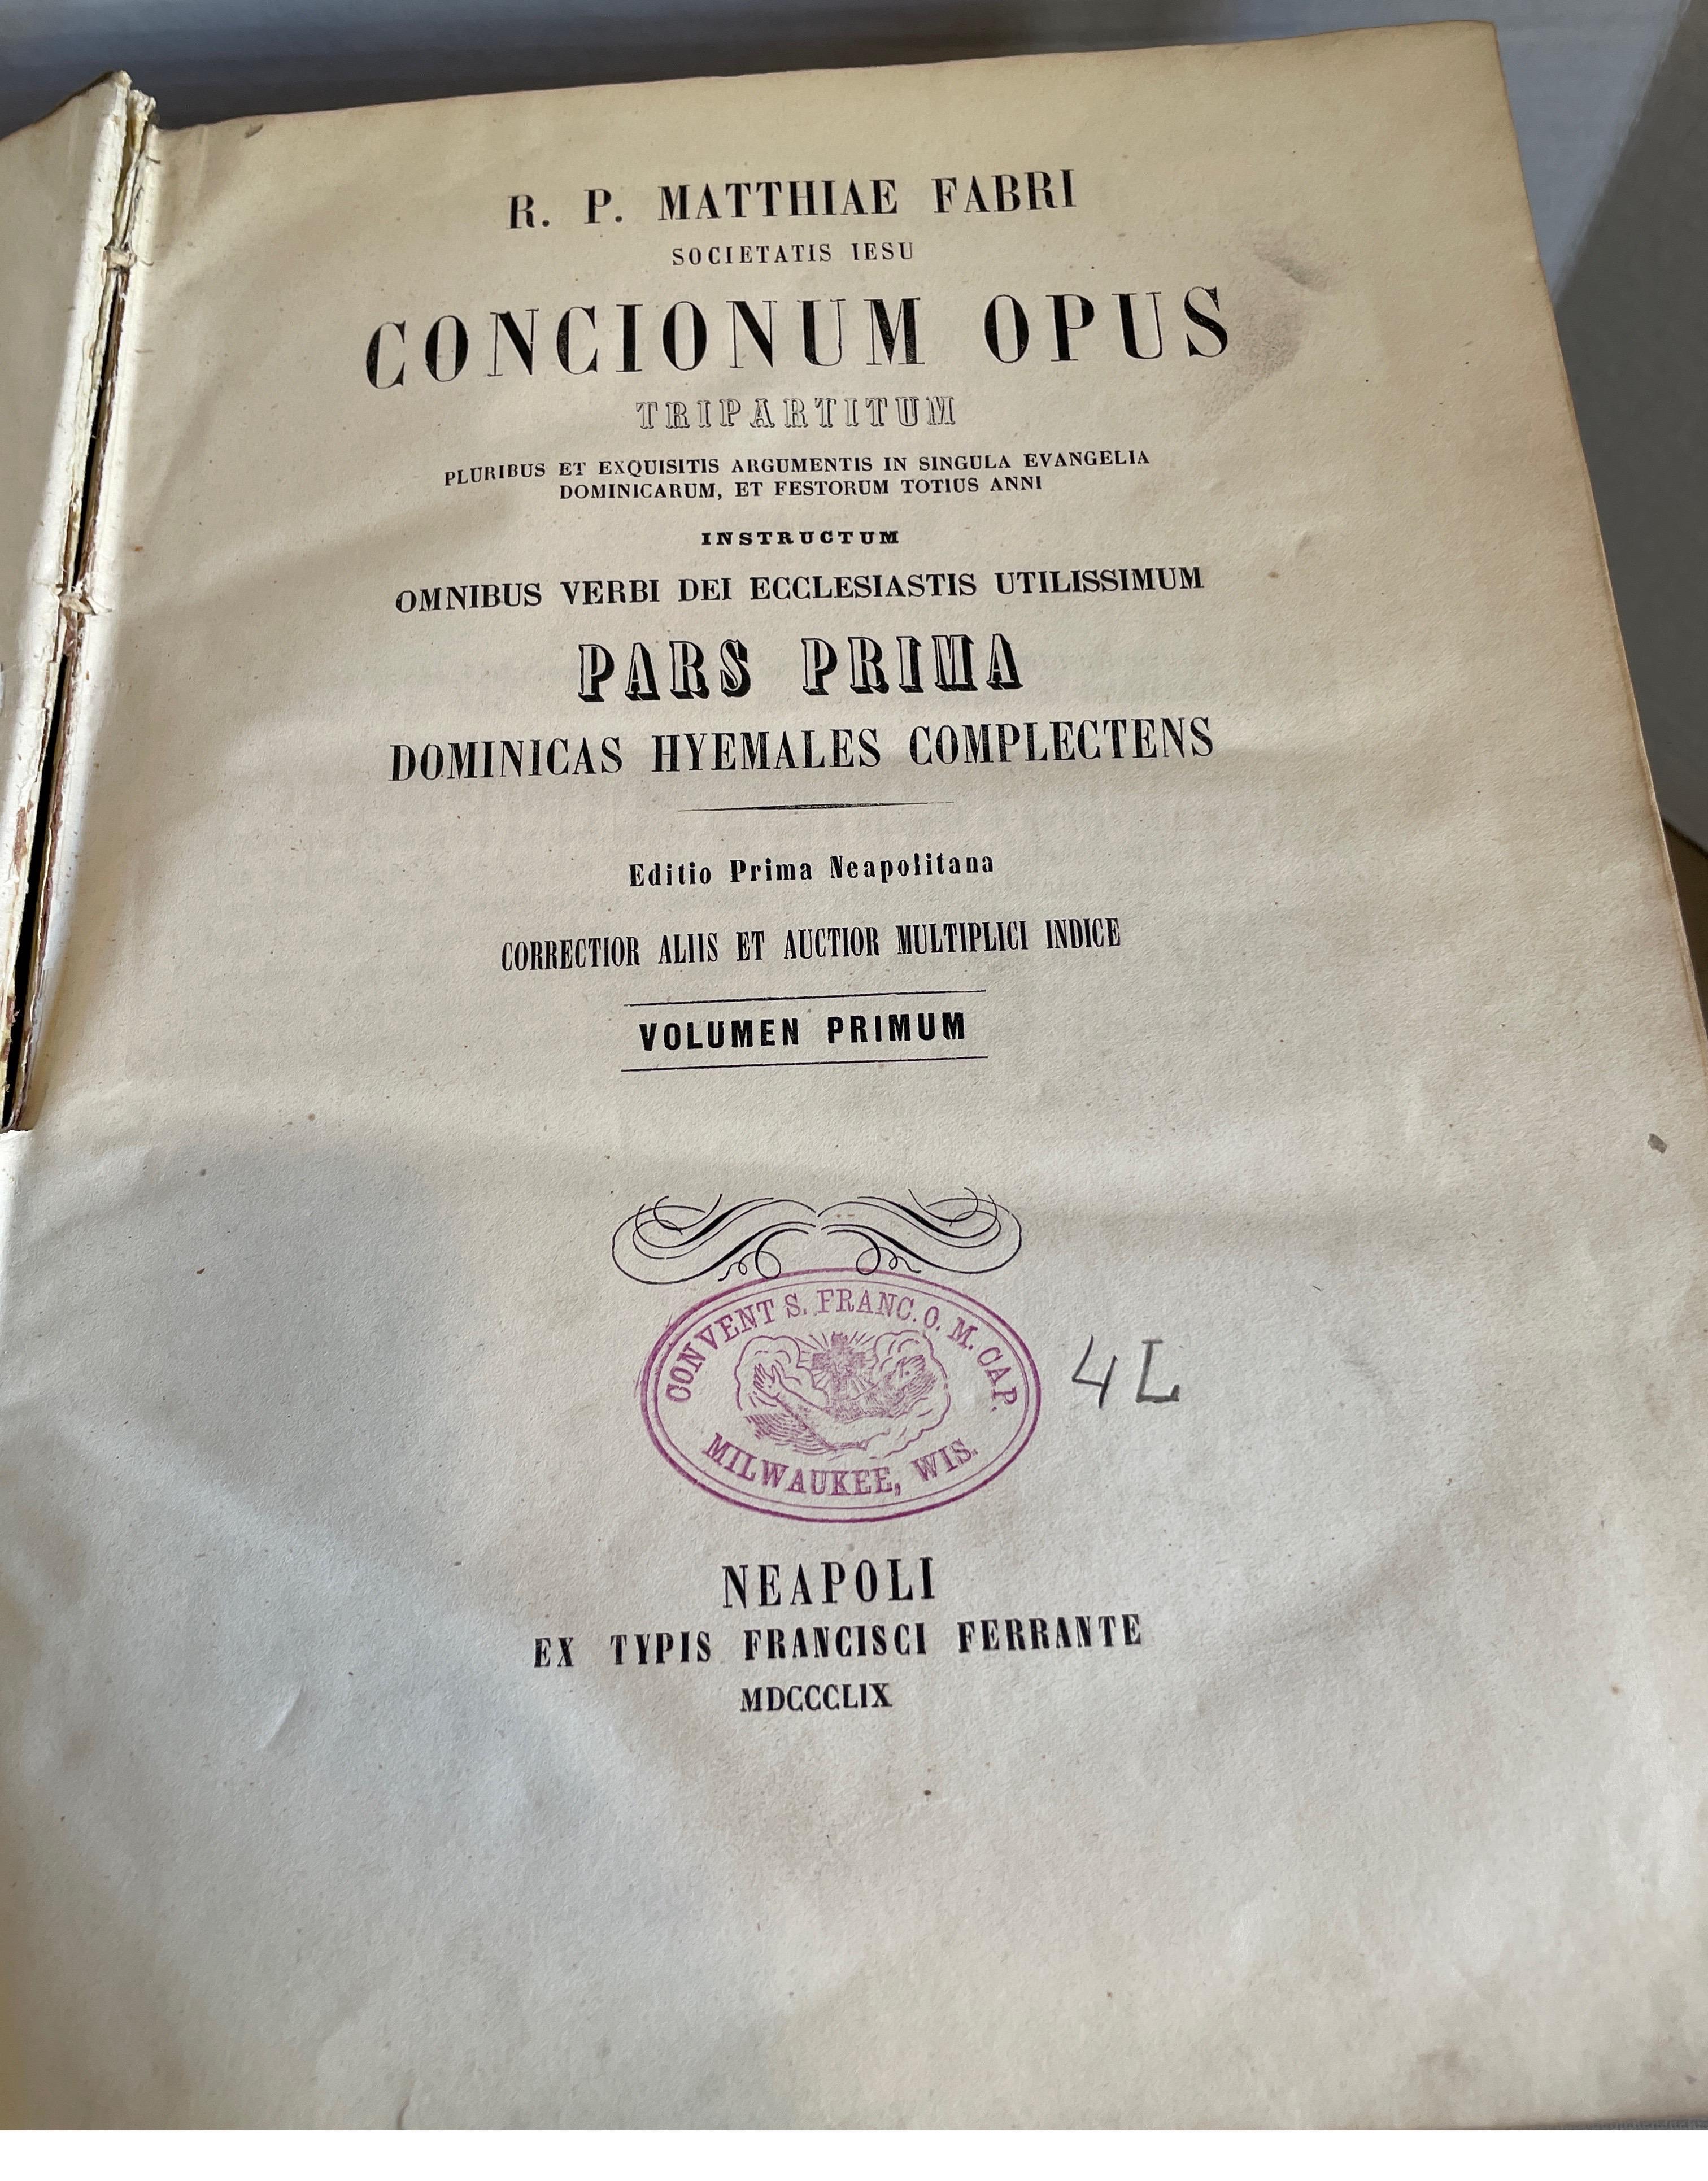 Set of 5 Fabri Concionum opus vellum books from 1872 For Sale 1